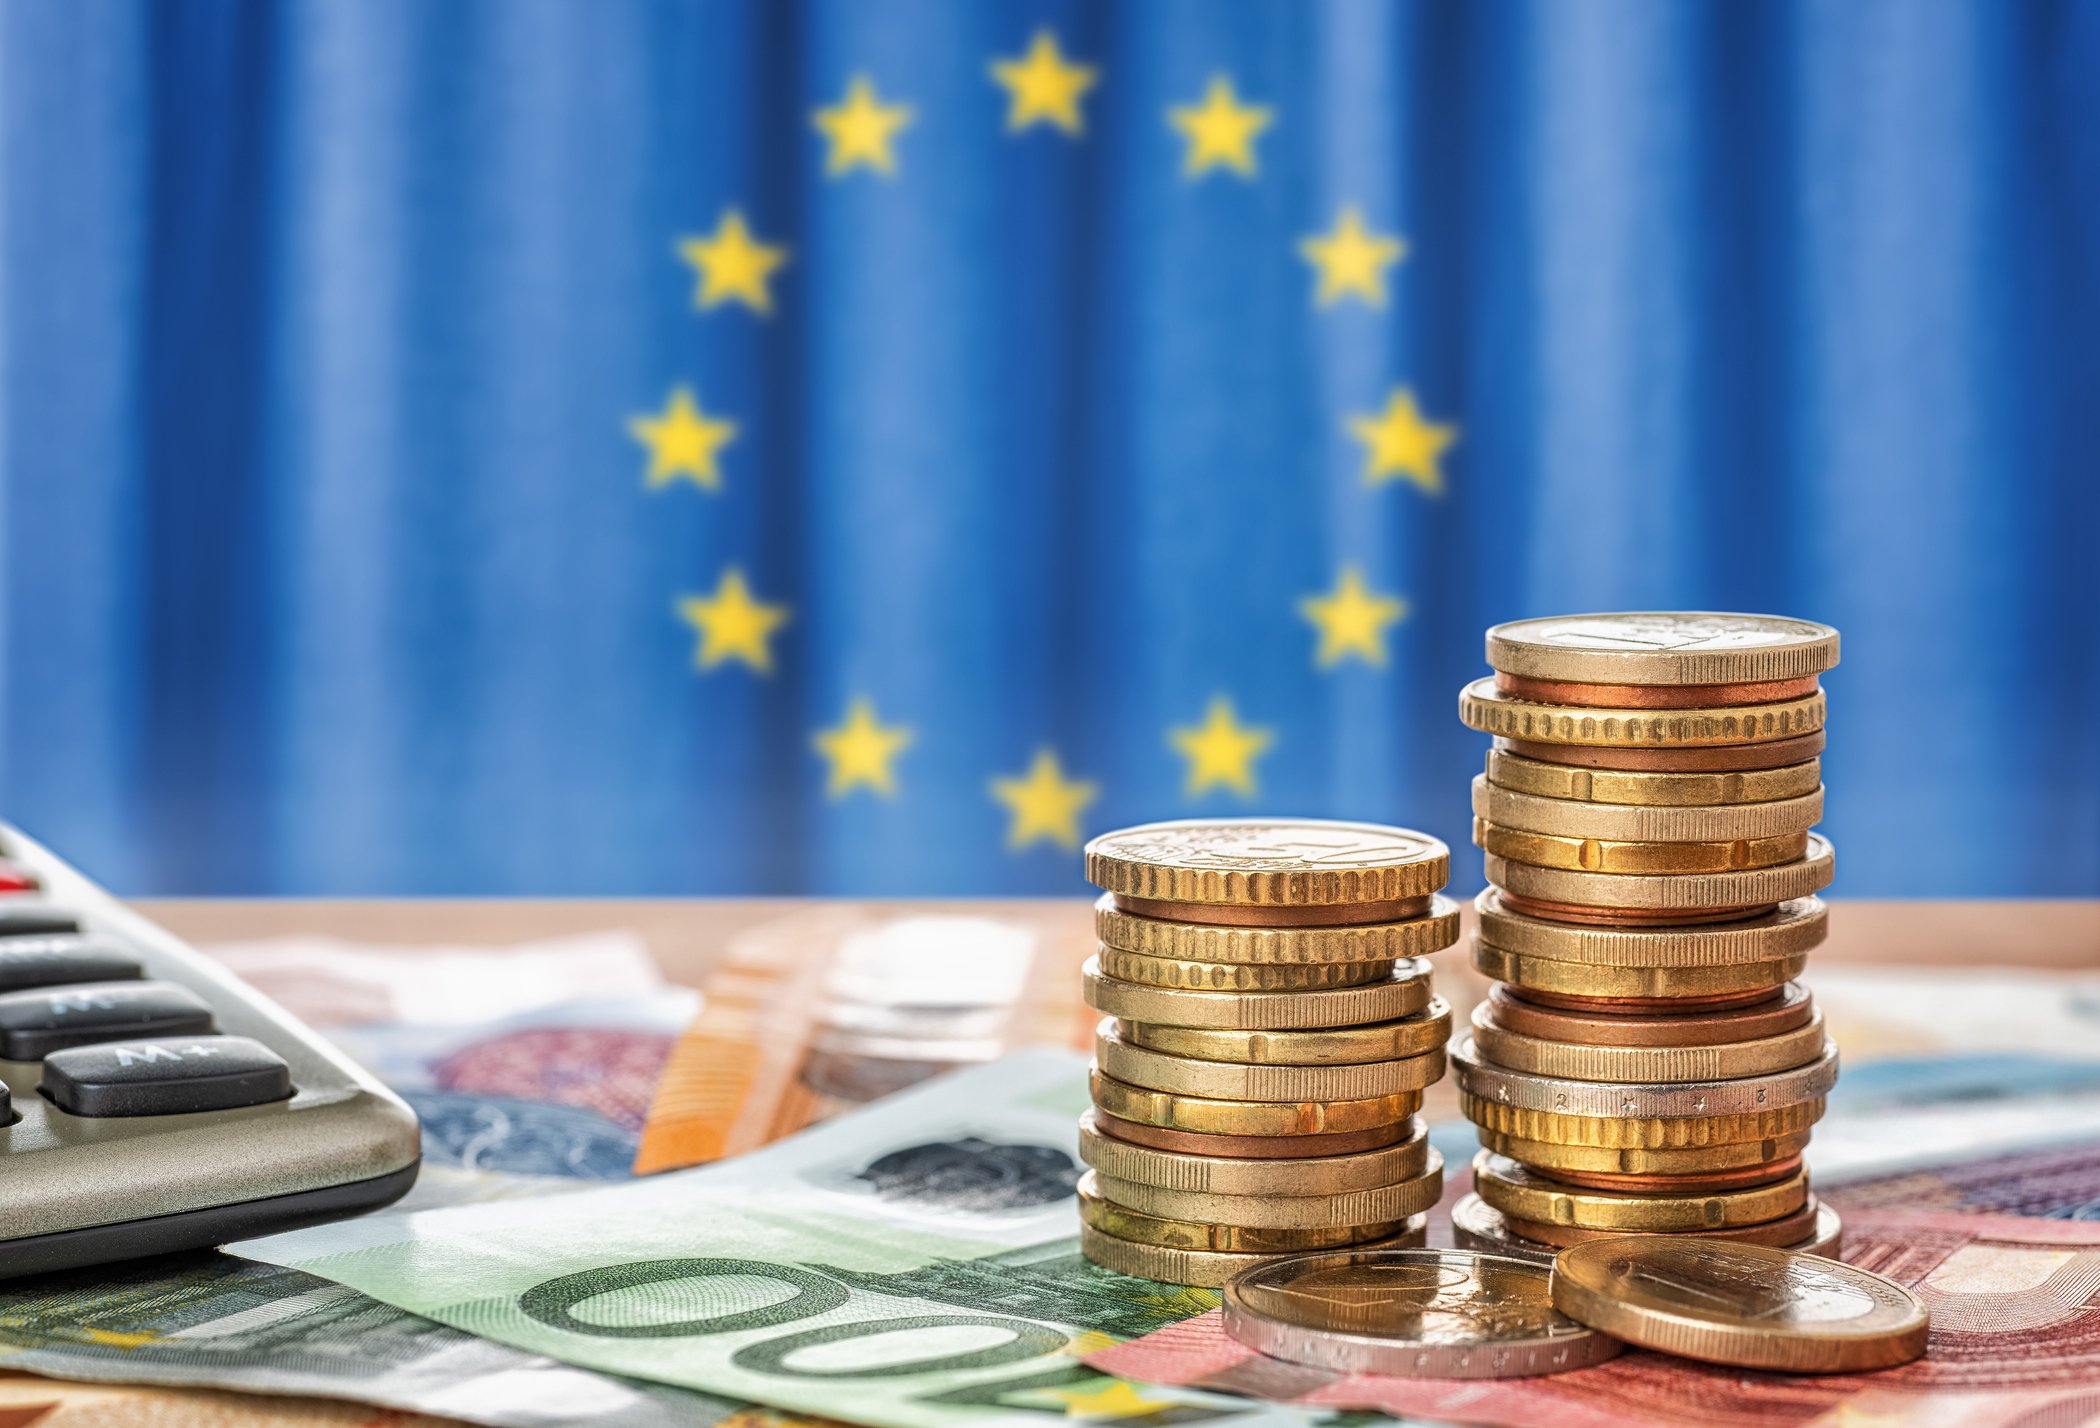 Sedlar och mynt framför Europeiska unionens flagga - Bildbanksfoto